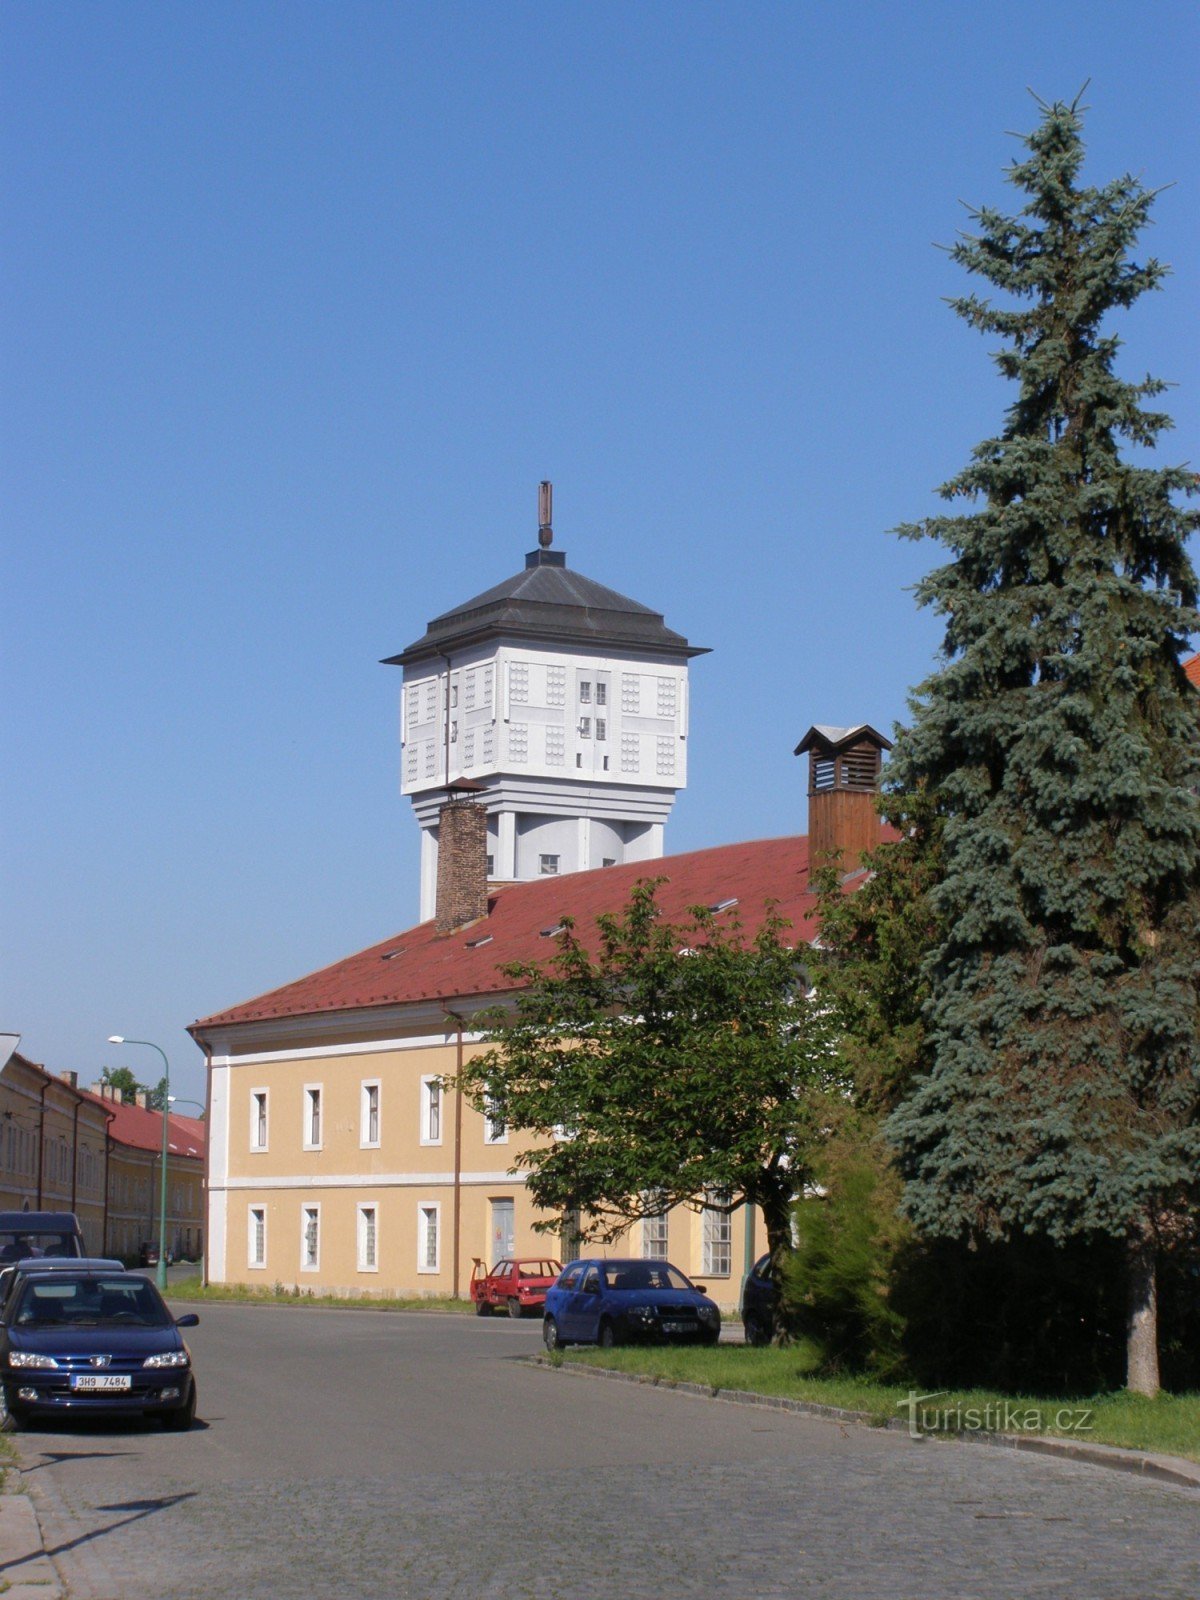 Josefov - torre de agua y cervecería